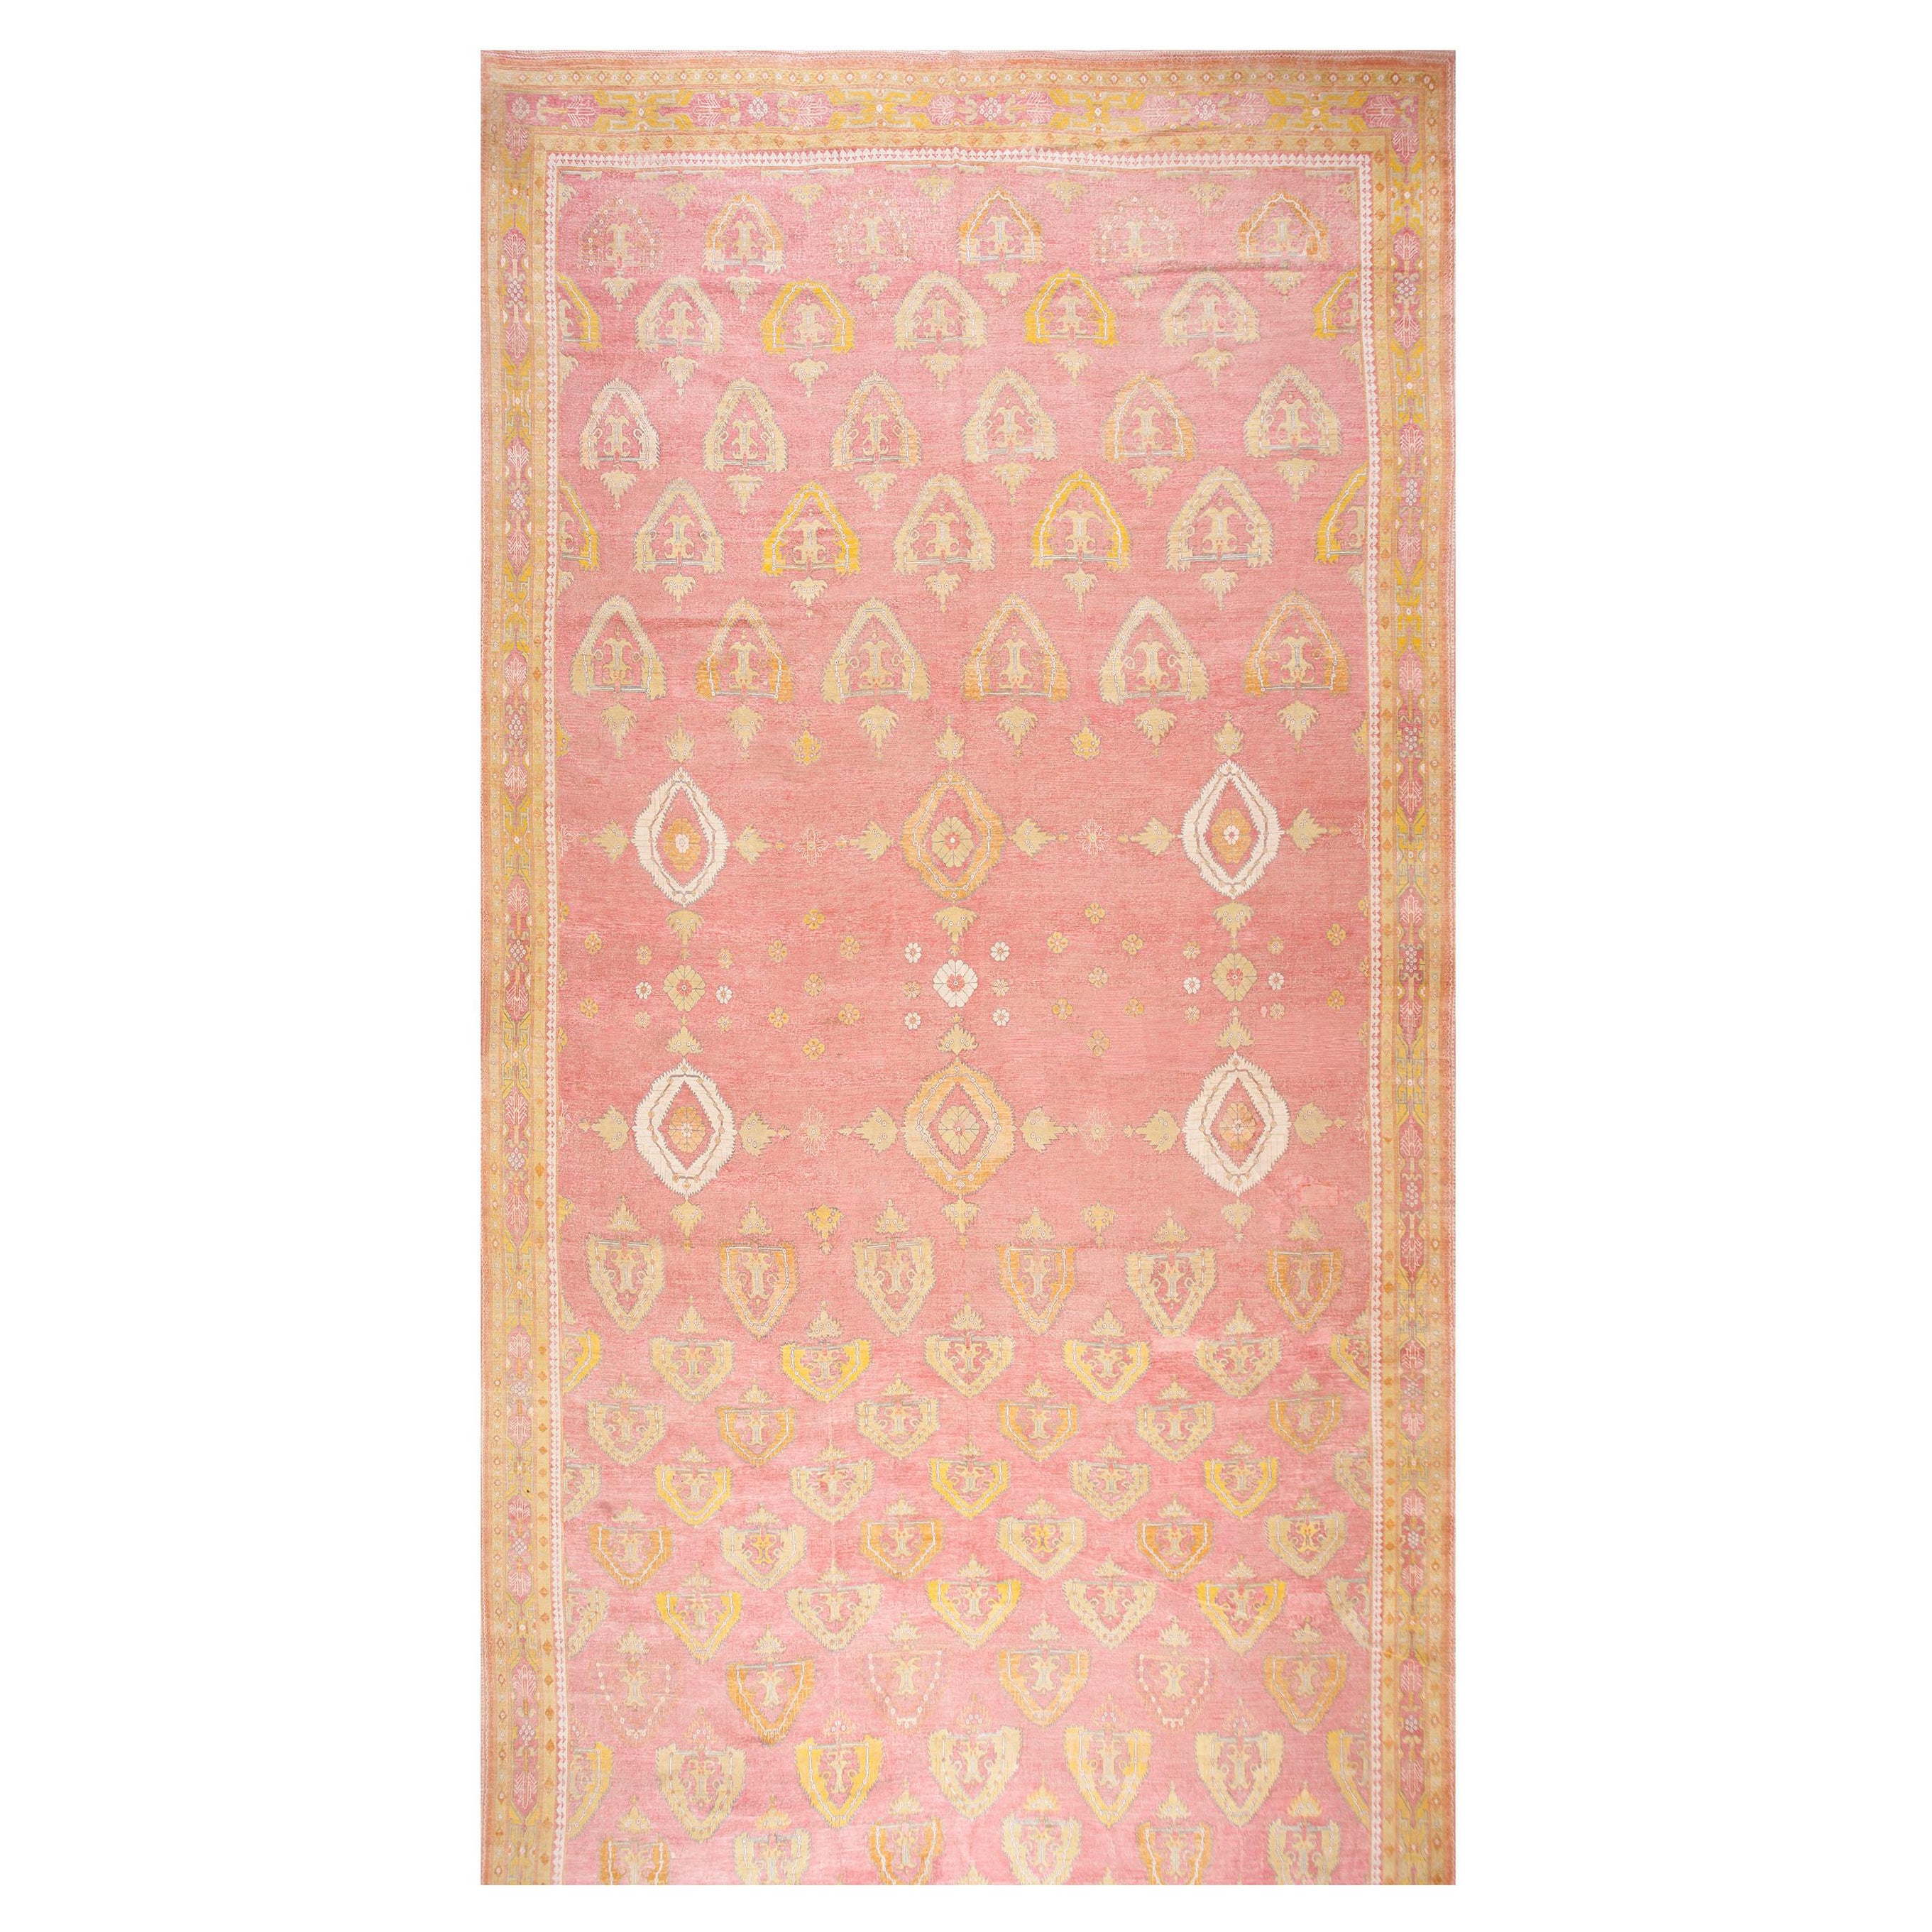 Indischer Agra-Teppich aus Baumwolle des frühen 20. Jahrhunderts ( 11'10" x 24'2" - 360 x 737)